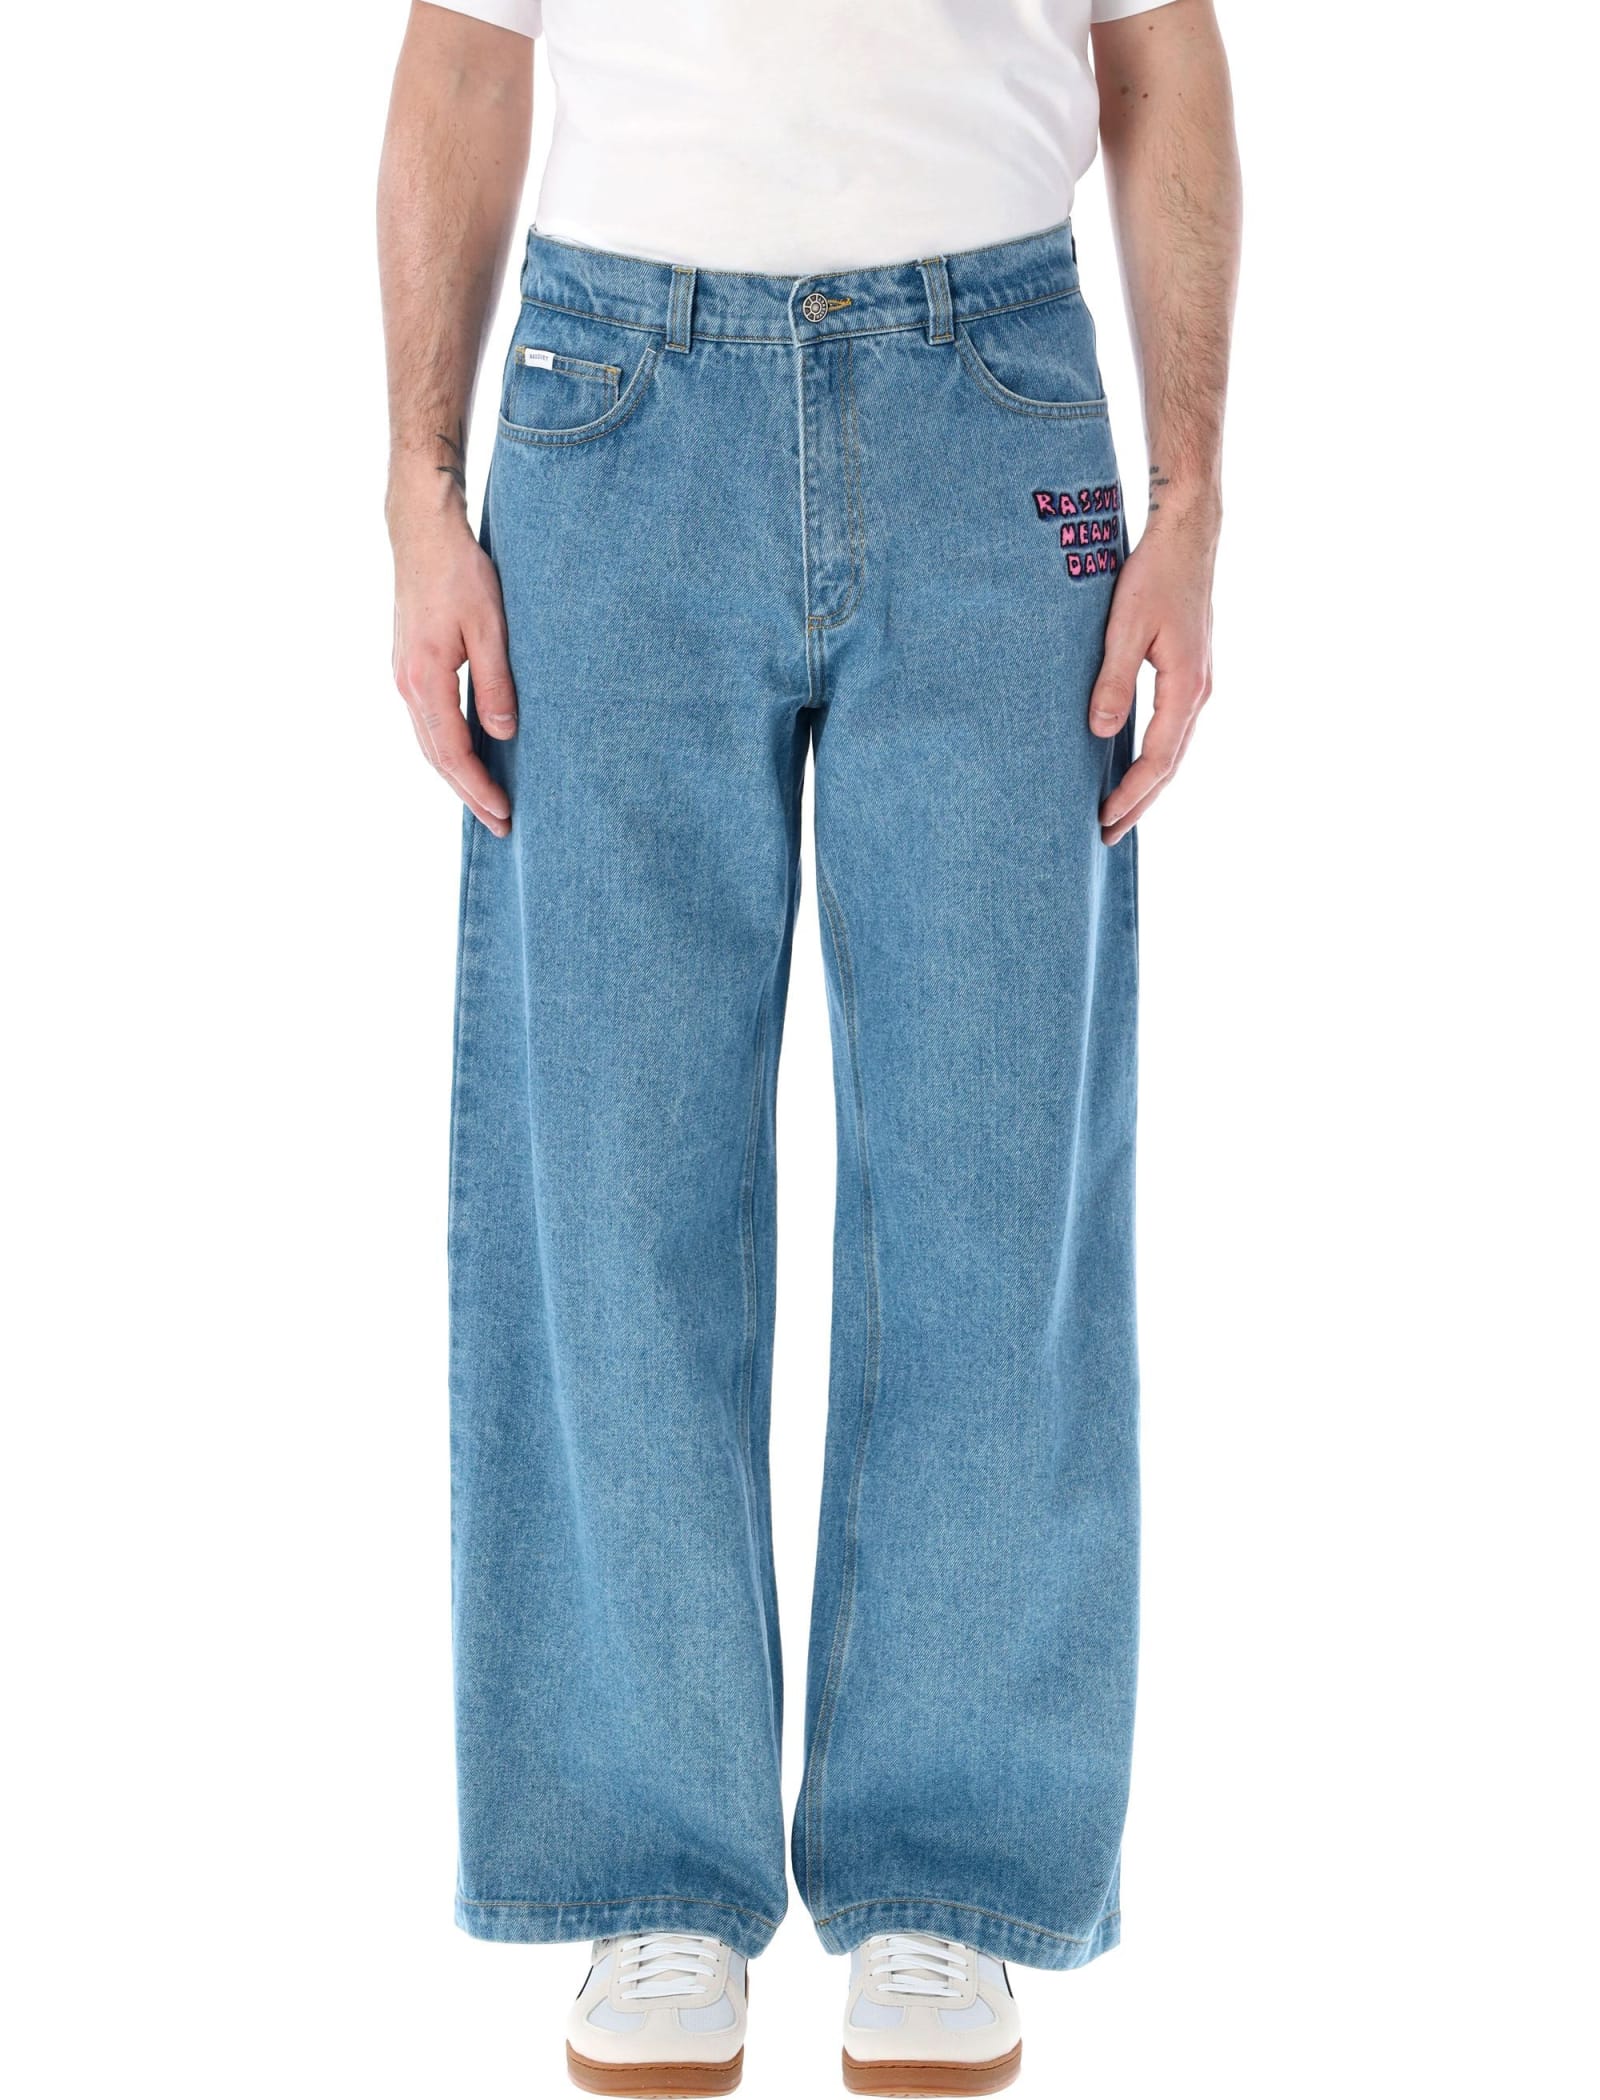 R.m.d. Baggy Jeans